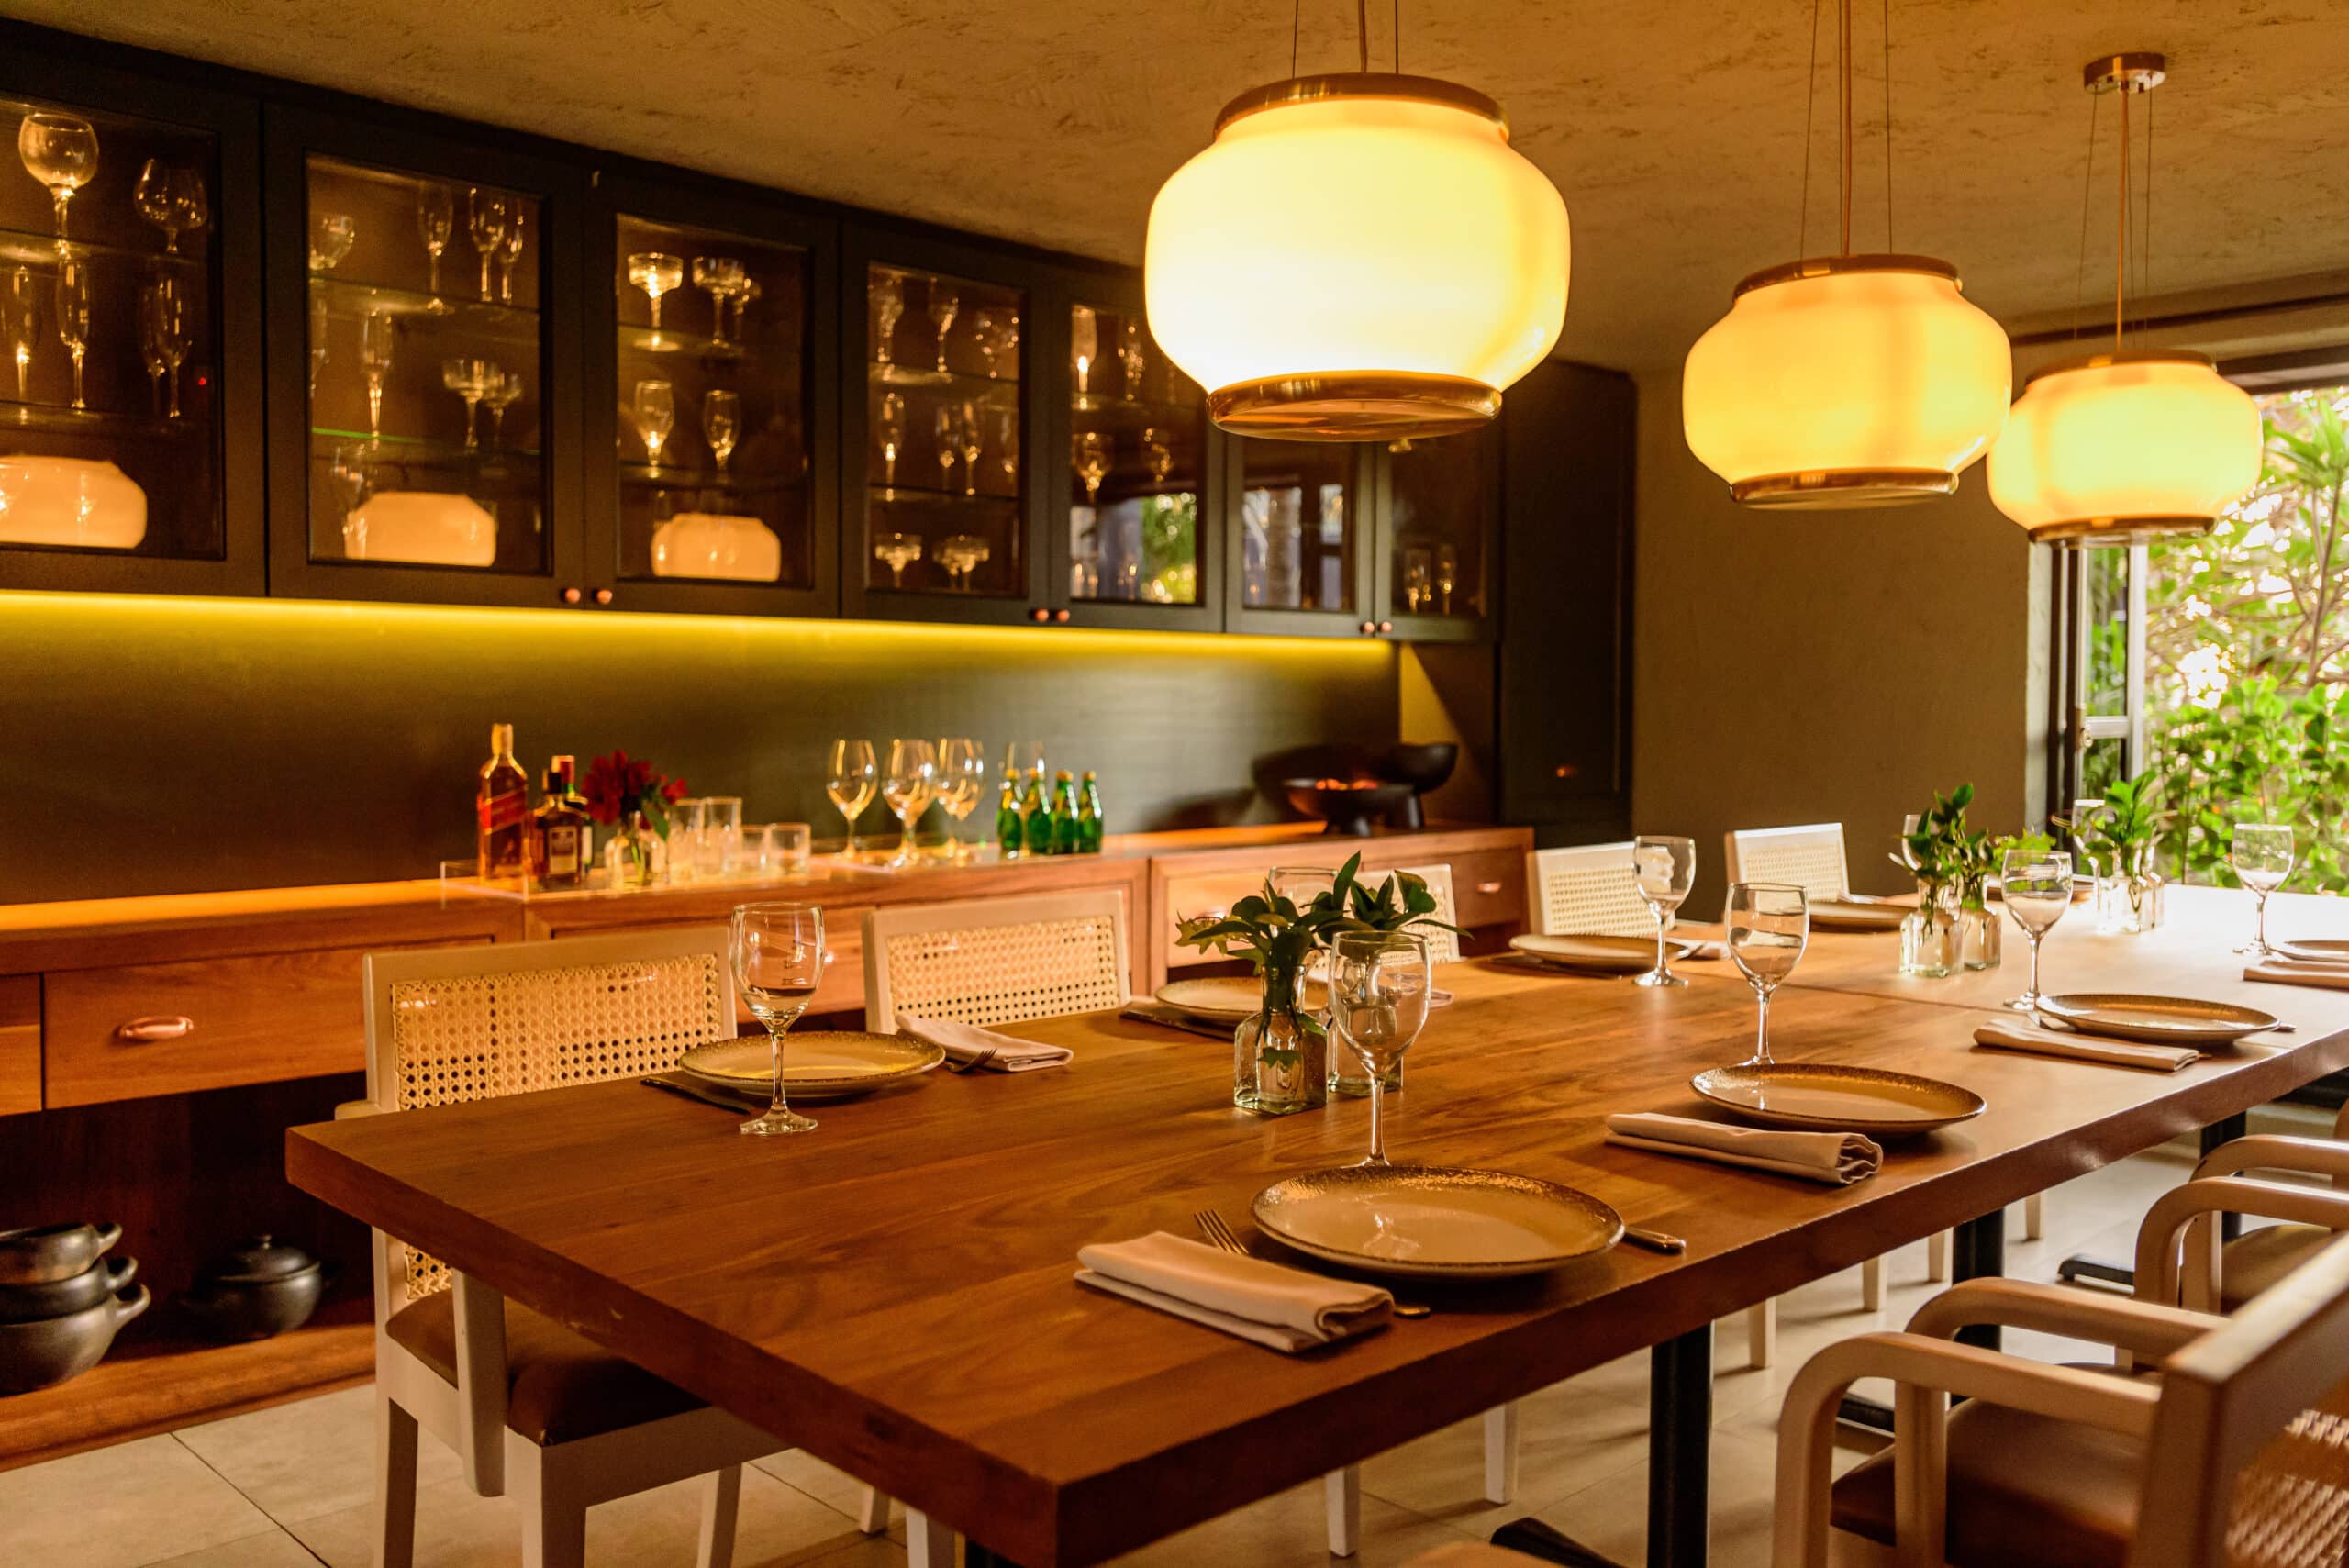 Restaurante Zeh Gastronomia Coeva lança menu executivo em três etapas a partir de R$ 49